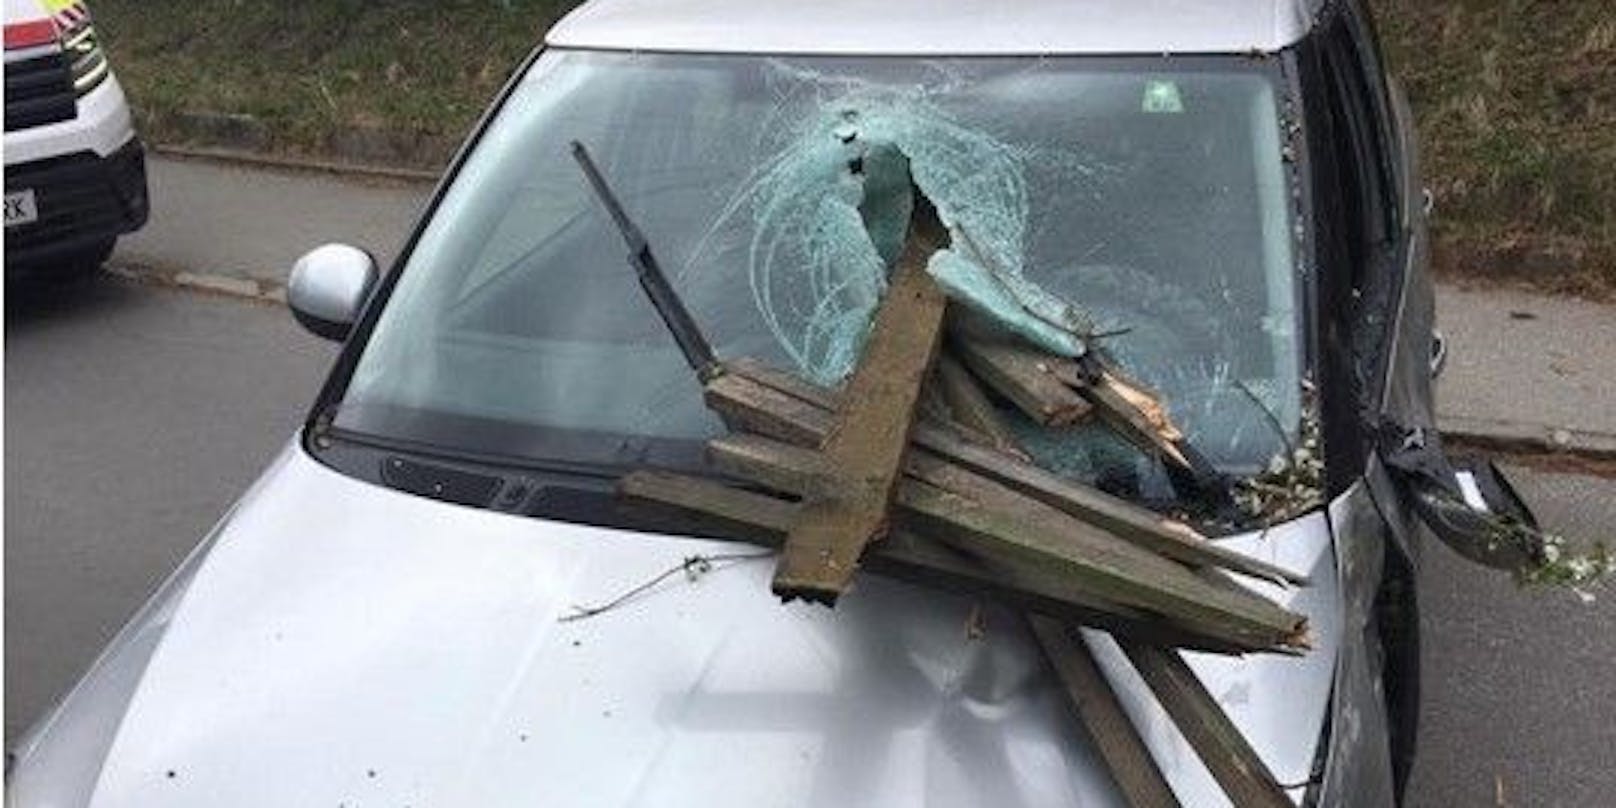 Bei einem Verkehrsunfall in Kapfenberg (ST) bohrte sich ein Zaunpfahl durch die Windschutzscheibe des Autos und verletzte die Lenkerin schwer.